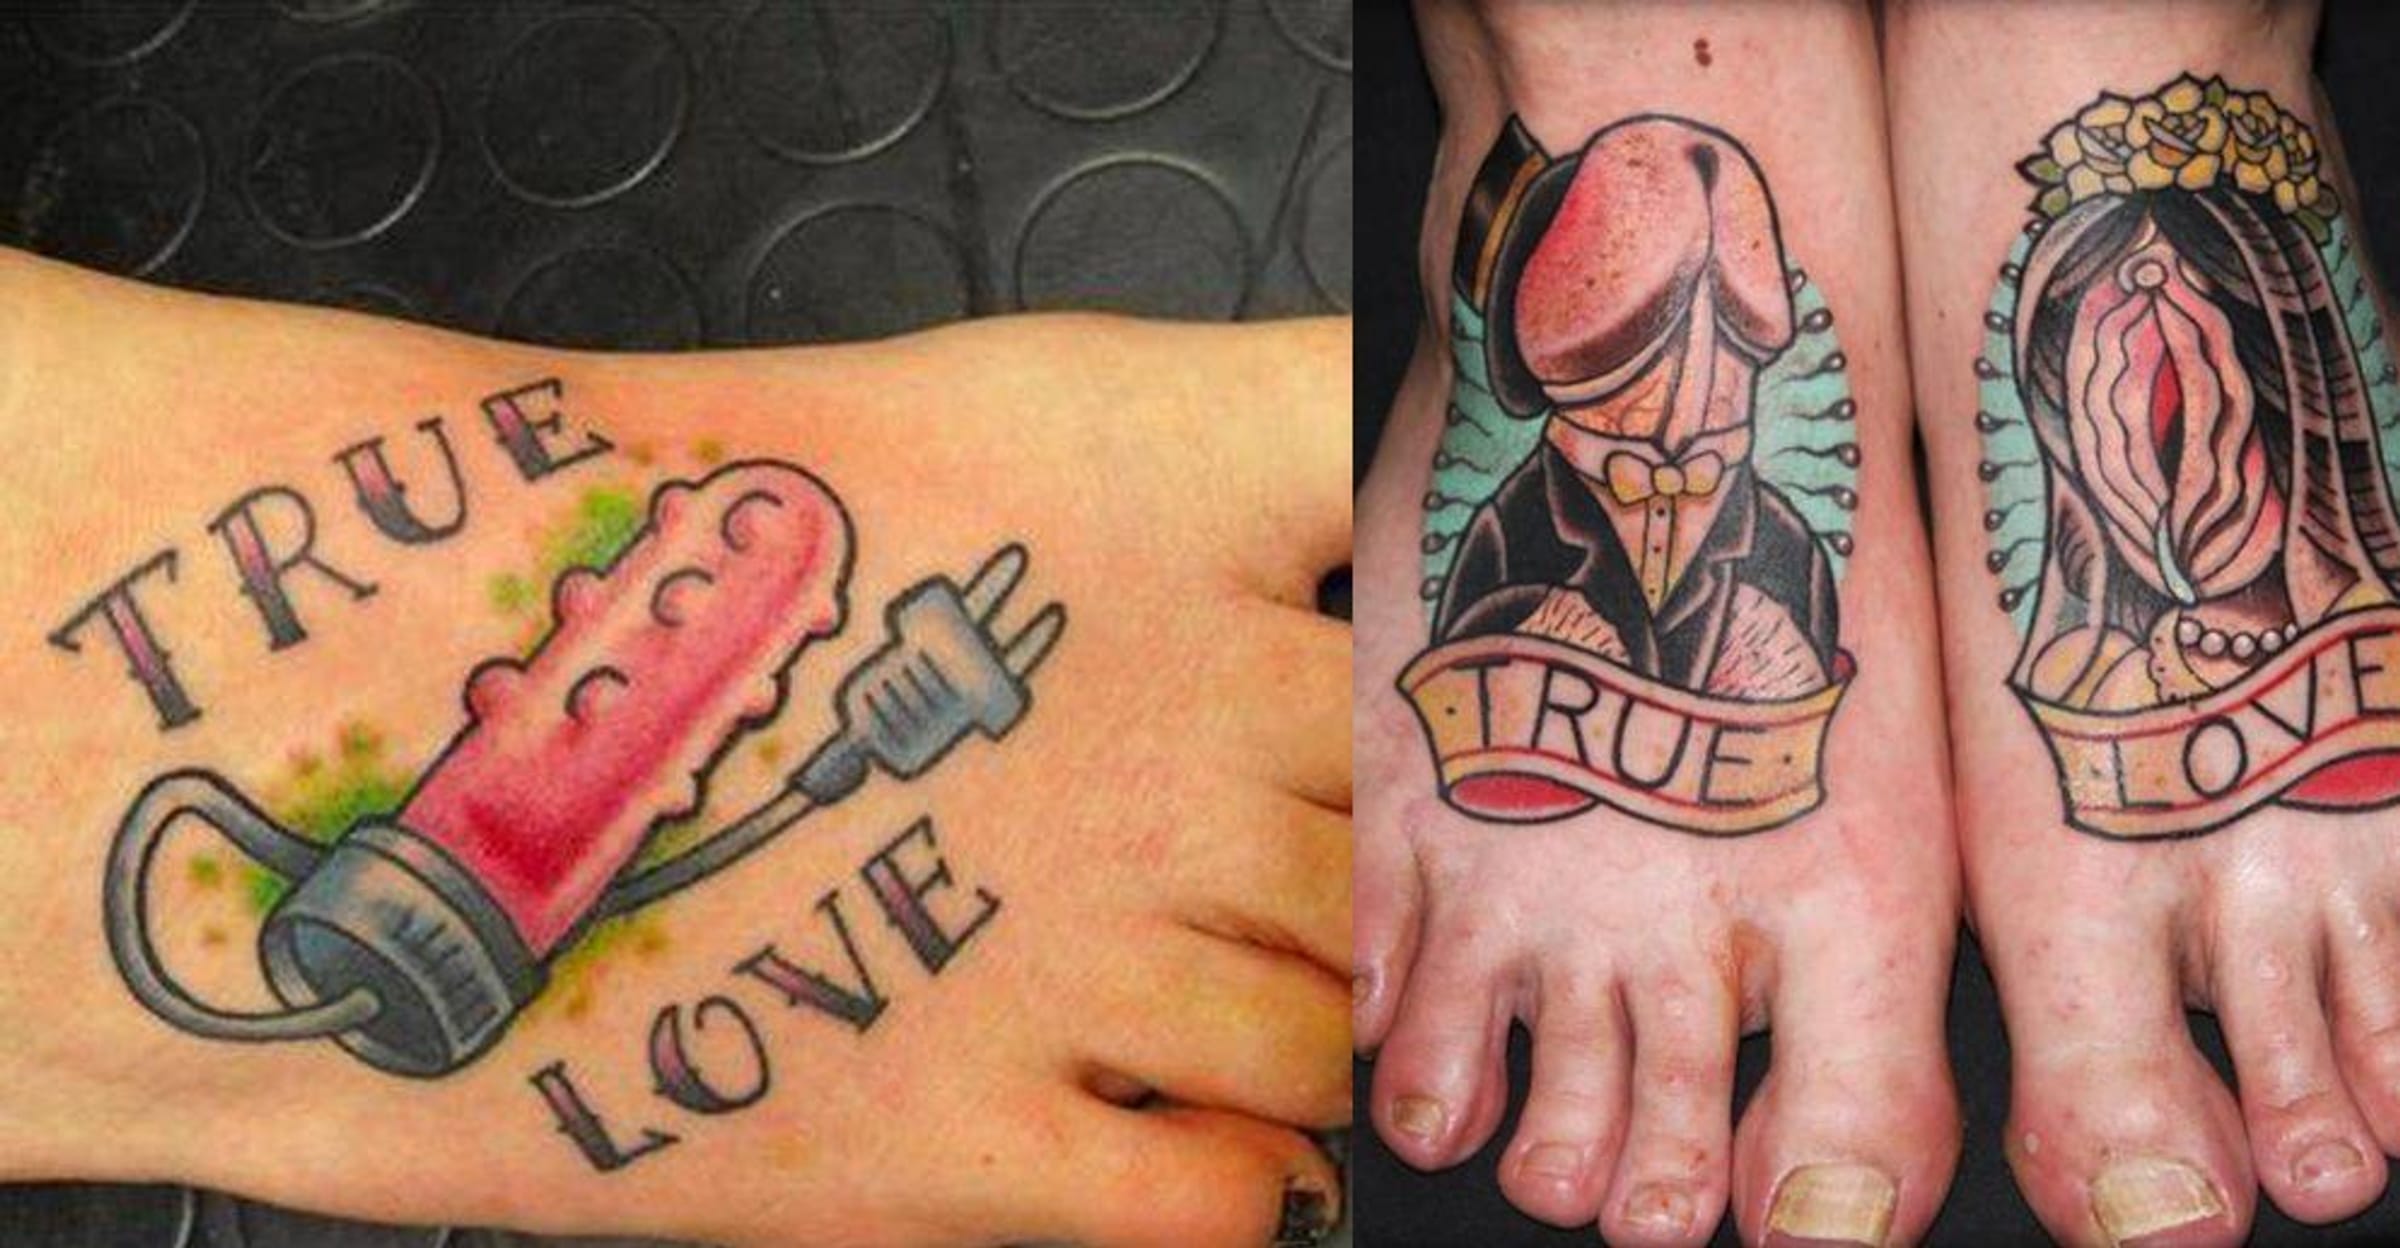 Random Worst True Love Tattoos